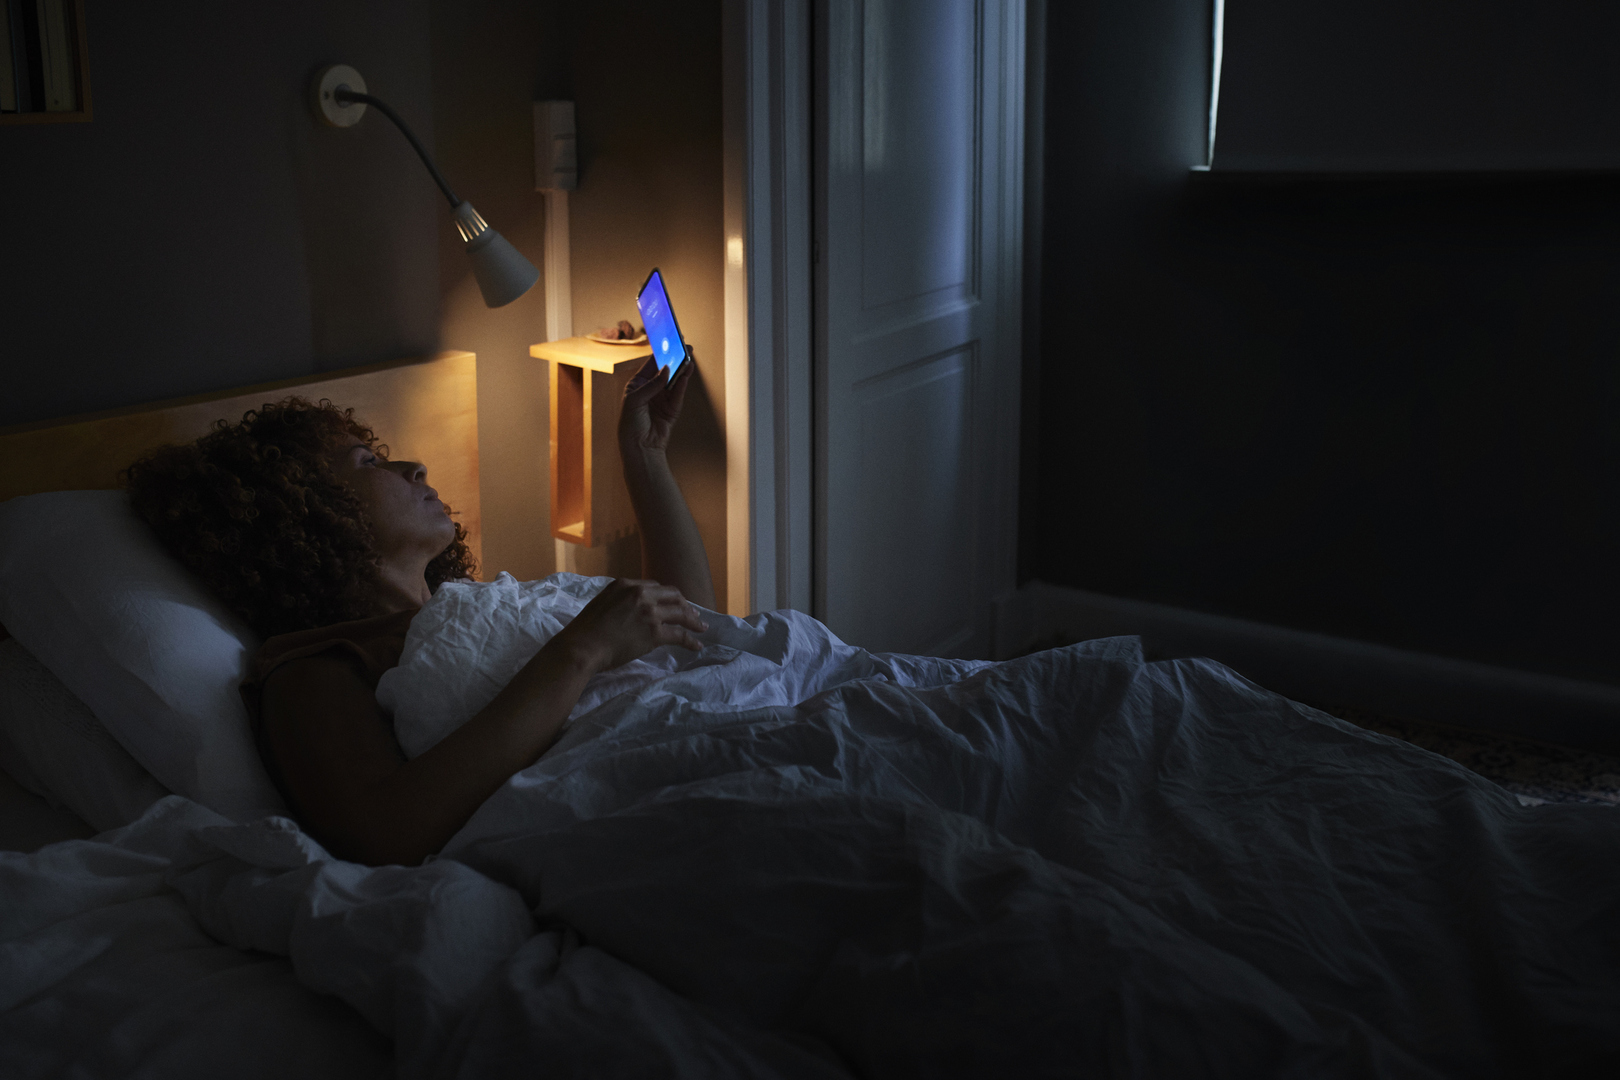 إطفاء الأضواء قبل موعد النوم يقلل من خطر على الصحة يصيب النساء أثناء الحمل